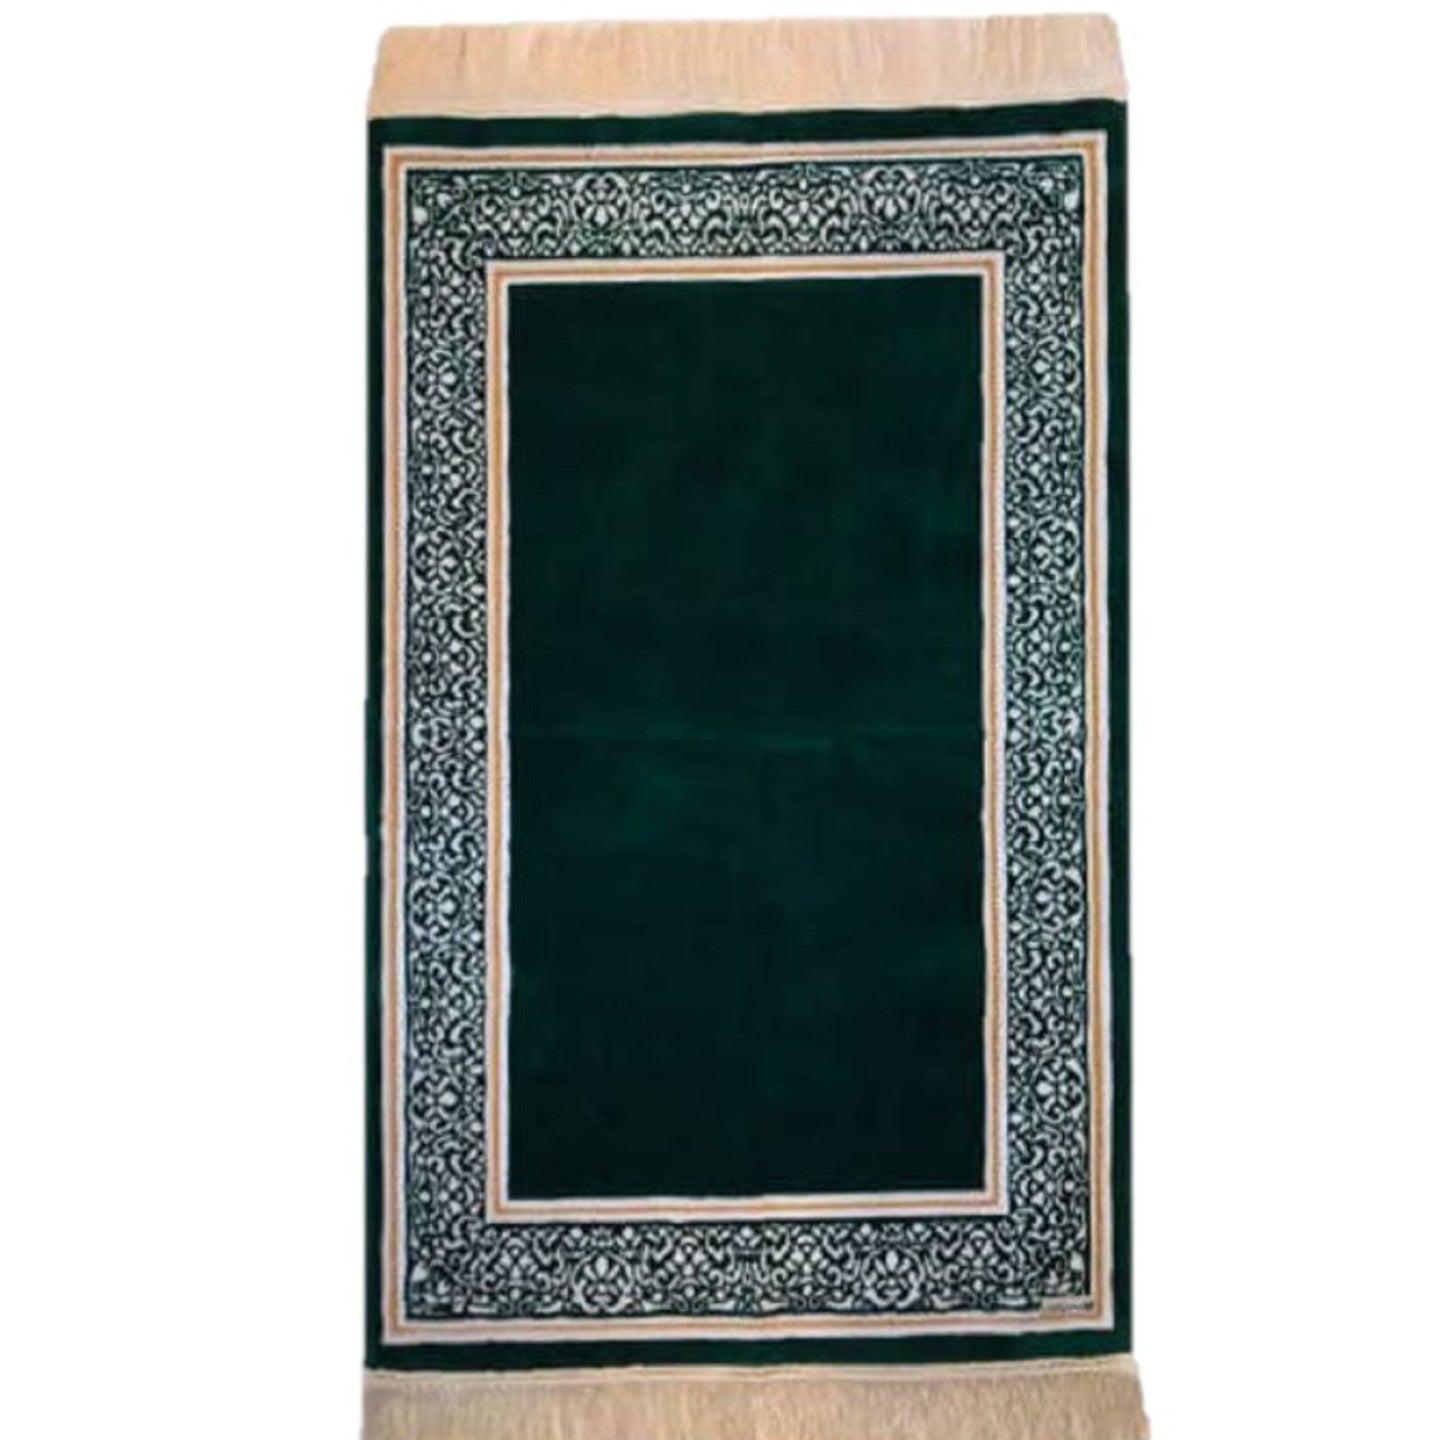 Sedrat Al Muntaha Prayer Mat (4 colours)